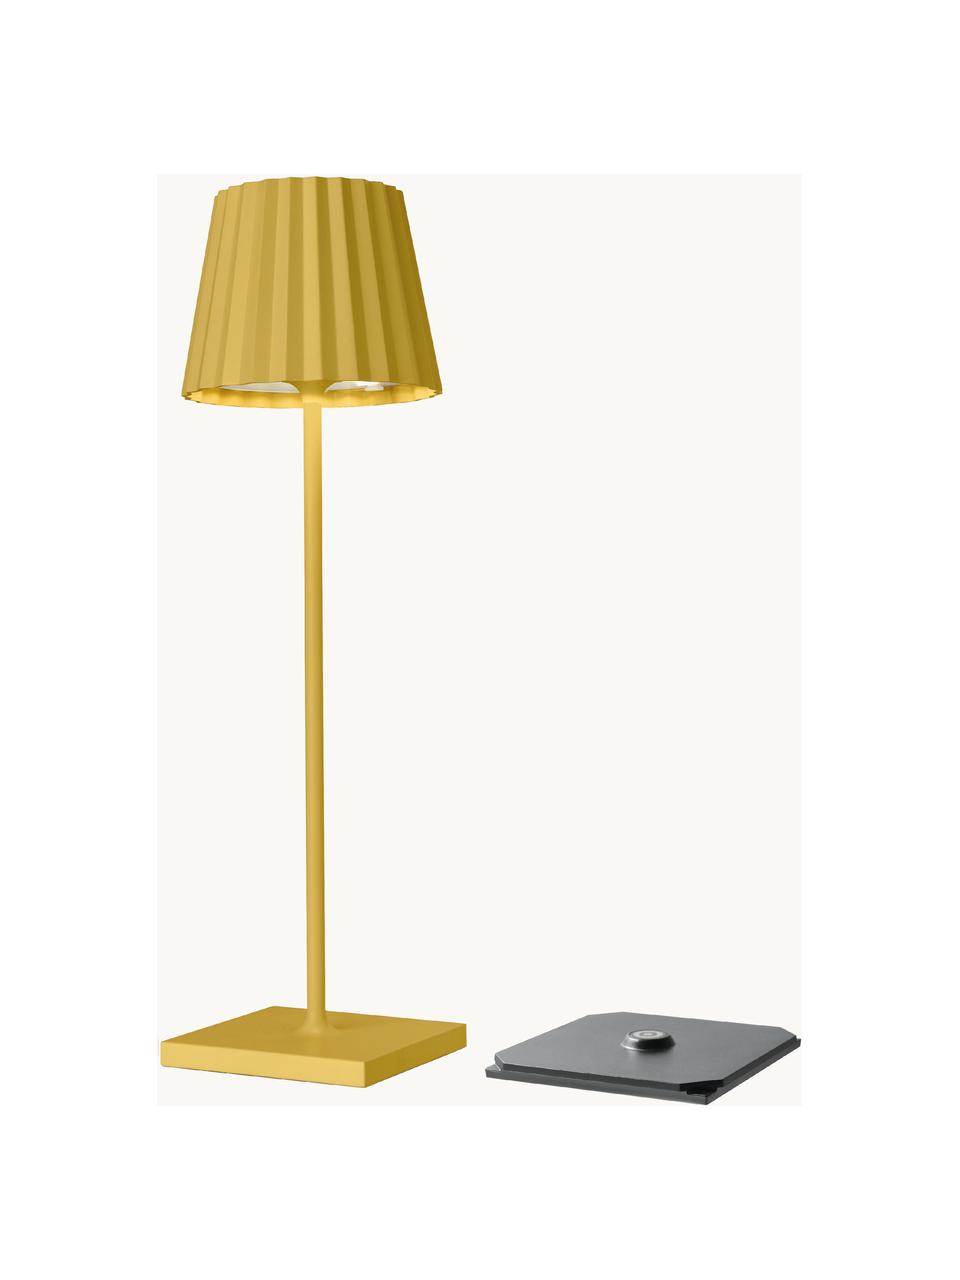 Lampada mobile da tavolo per esterni gialla a LED dimmerabile Trellia, Paralume: alluminio rivestito, Giallo, nero, Ø 12 x Alt. 38 cm